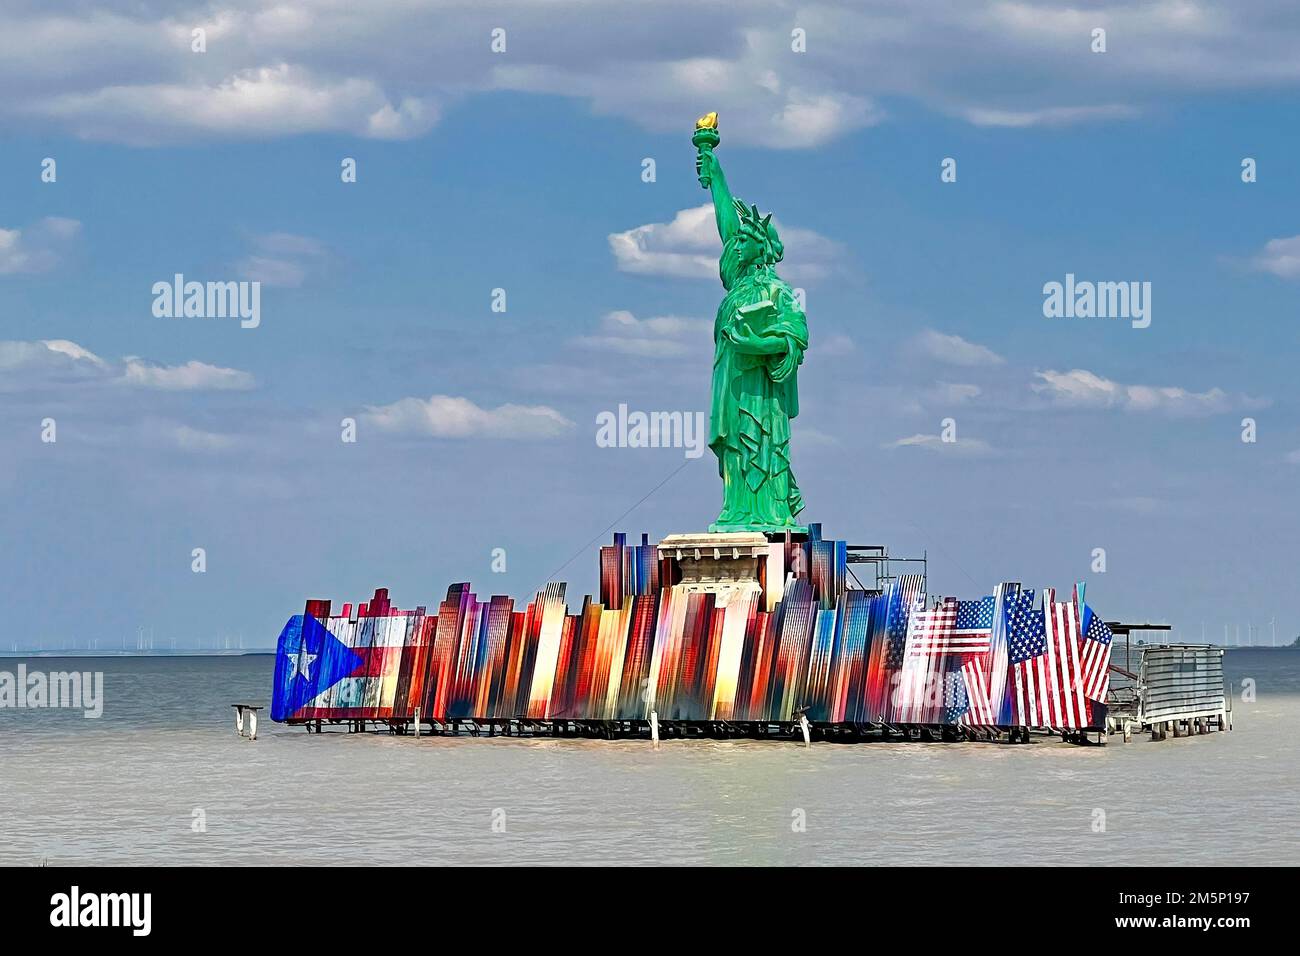 Estatua de la Libertad como telón de fondo, Festival del Lago Moerbisch, West Side Story, teatro musical, opereta meca, festival de verano, el mayor escenario del lago Foto de stock